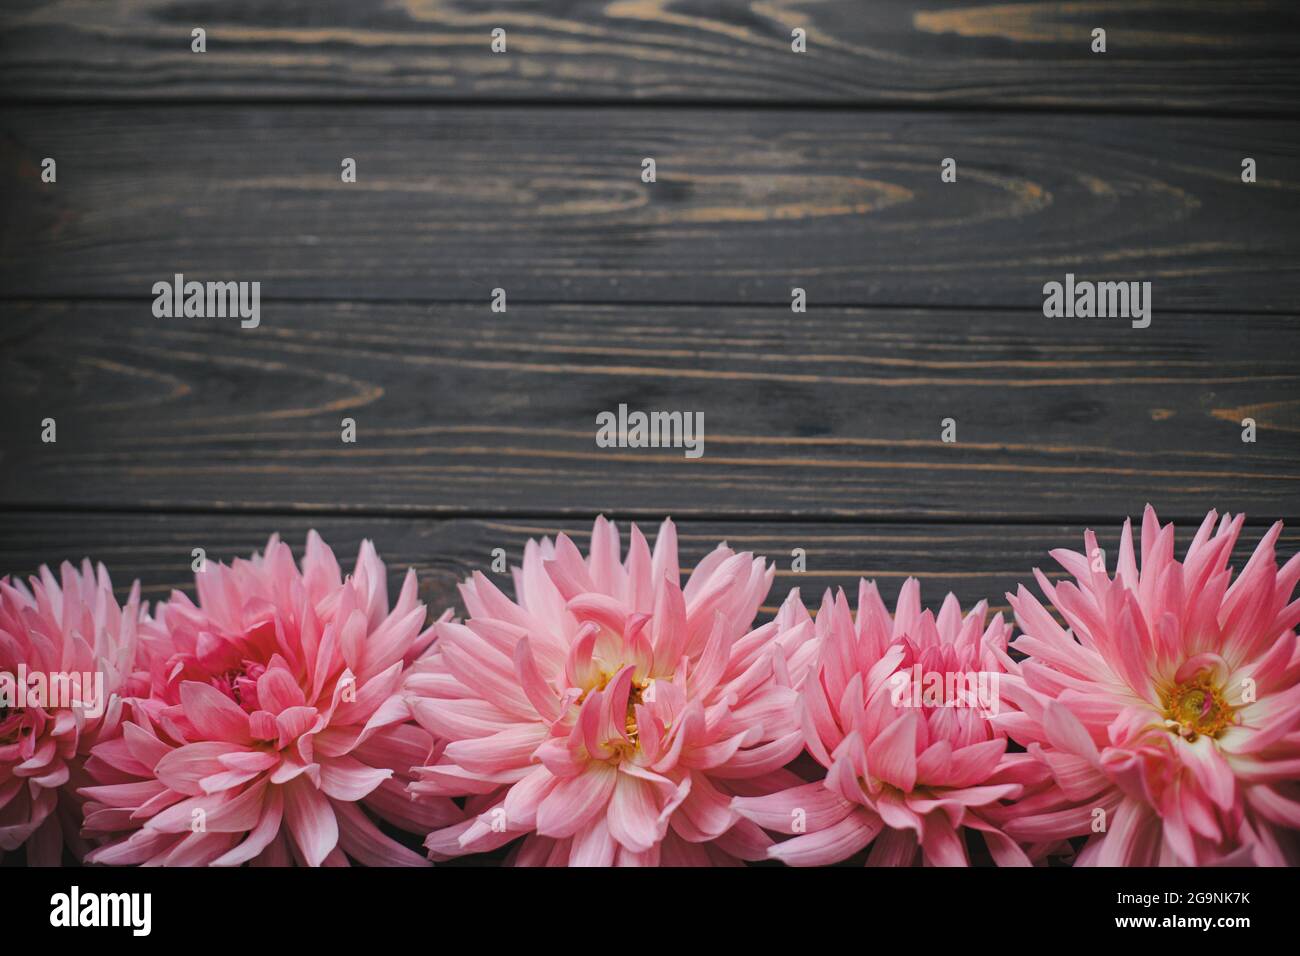 Belles fleurs de dahlias roses sur bois rustique, plat avec espace pour le texte. Modèle de carte de vœux Seasons. Les fleurs d'automne bordent le dos en bois sombre Banque D'Images